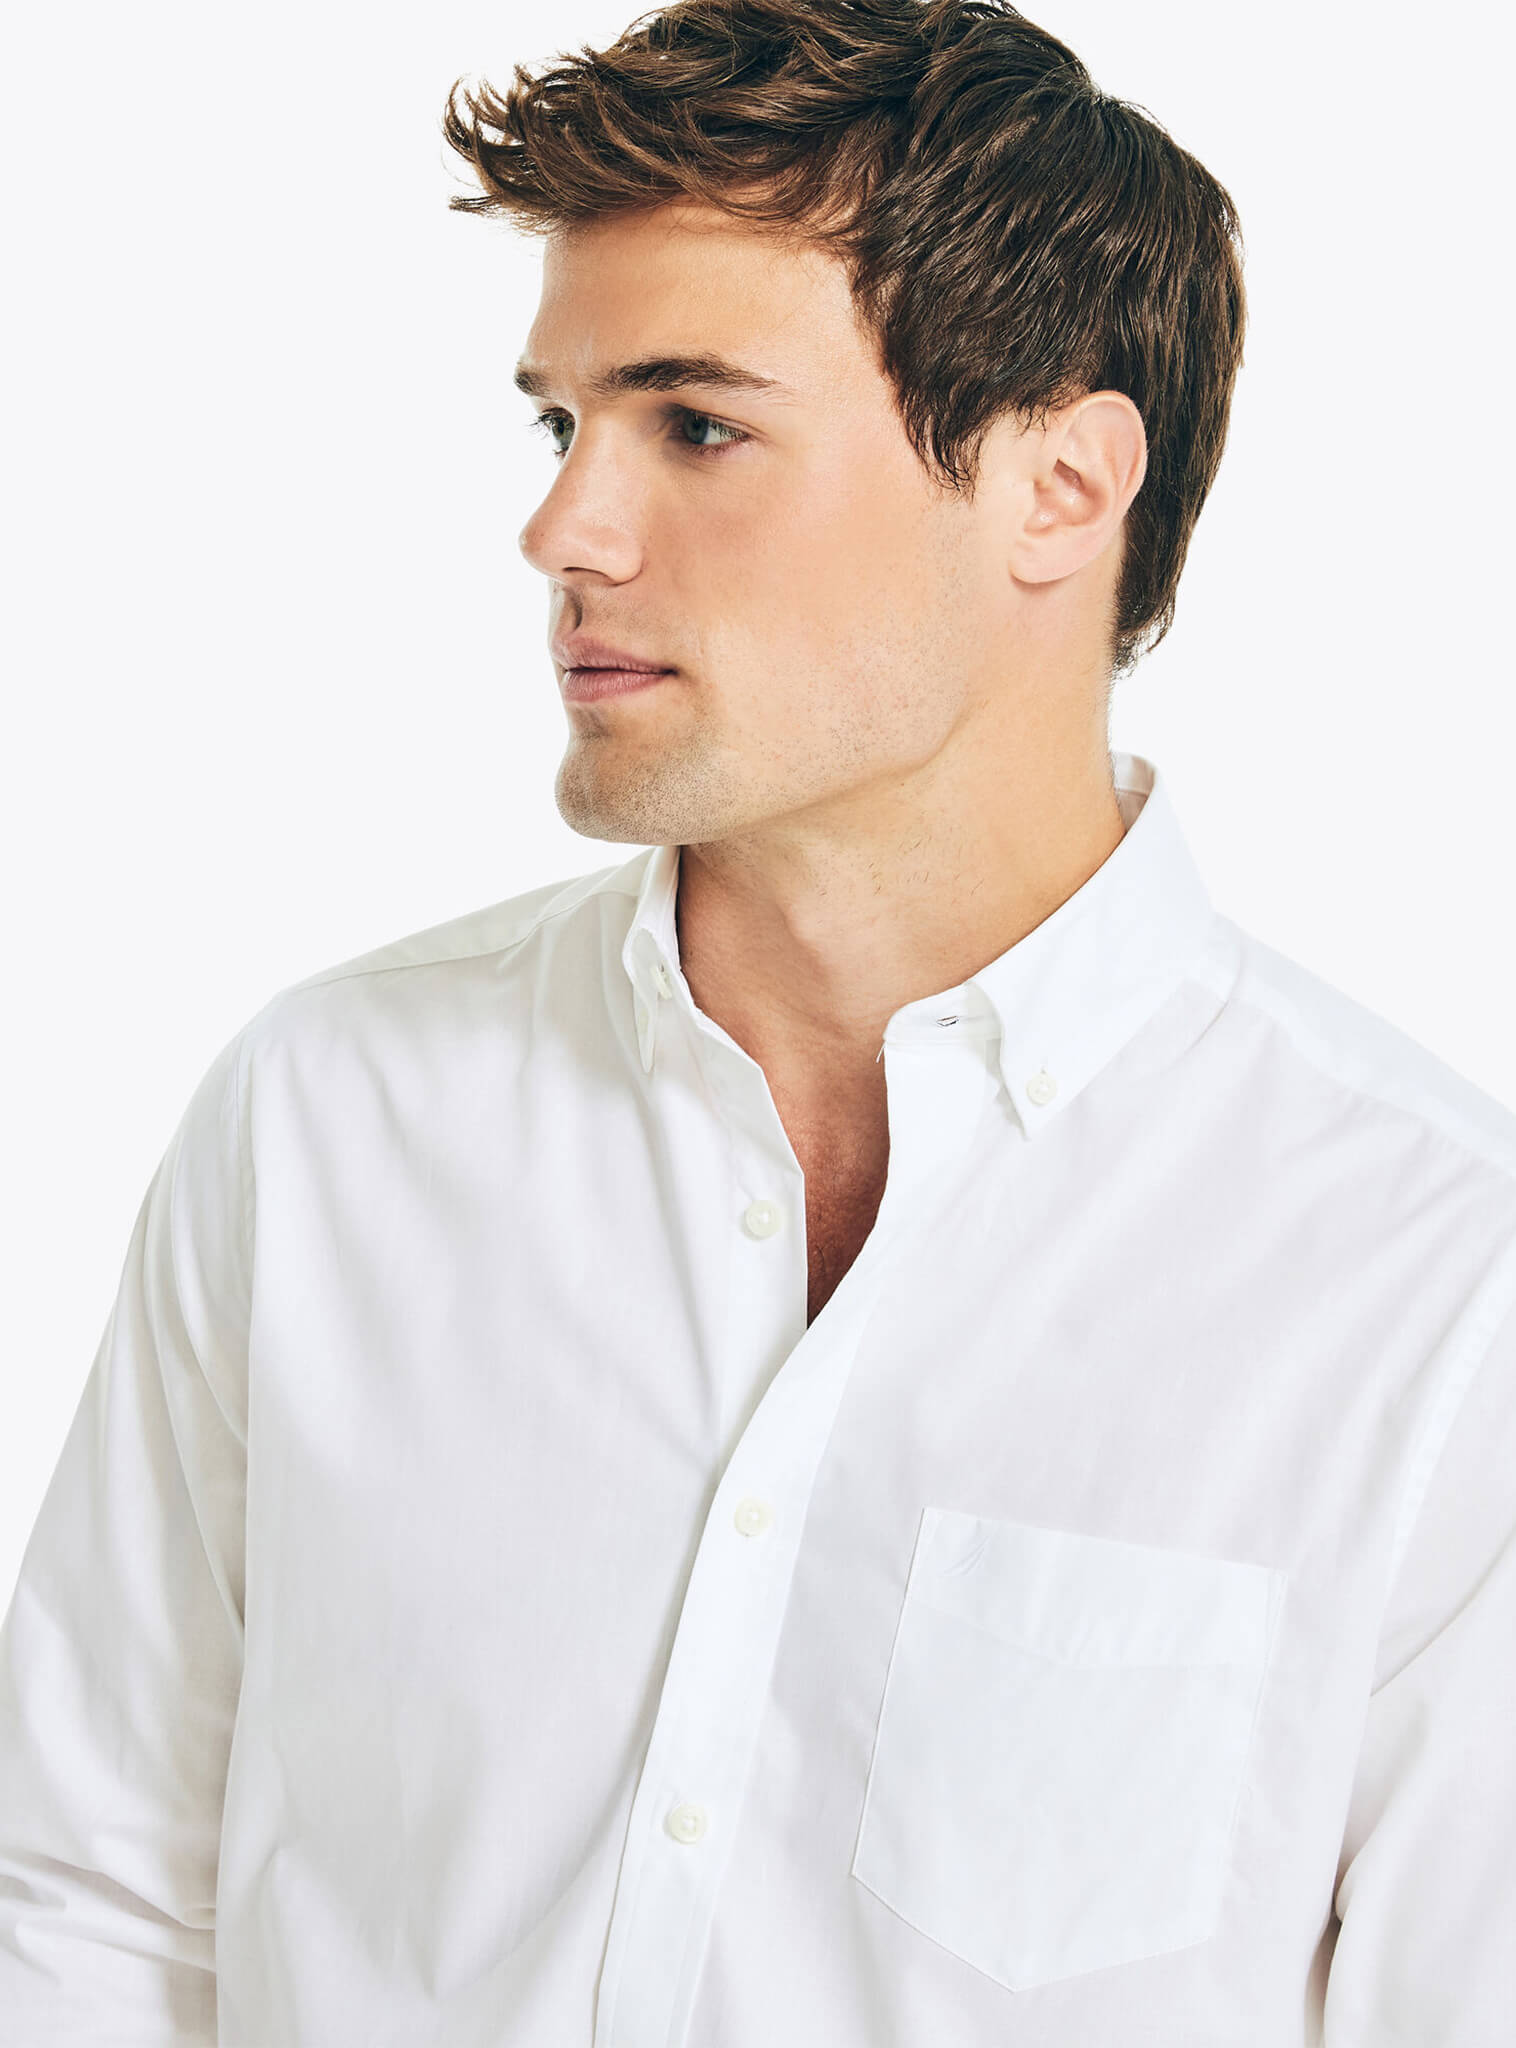 Camisa Manga Larga Sólida Blanca Resistente A Las Arrugas Hombre